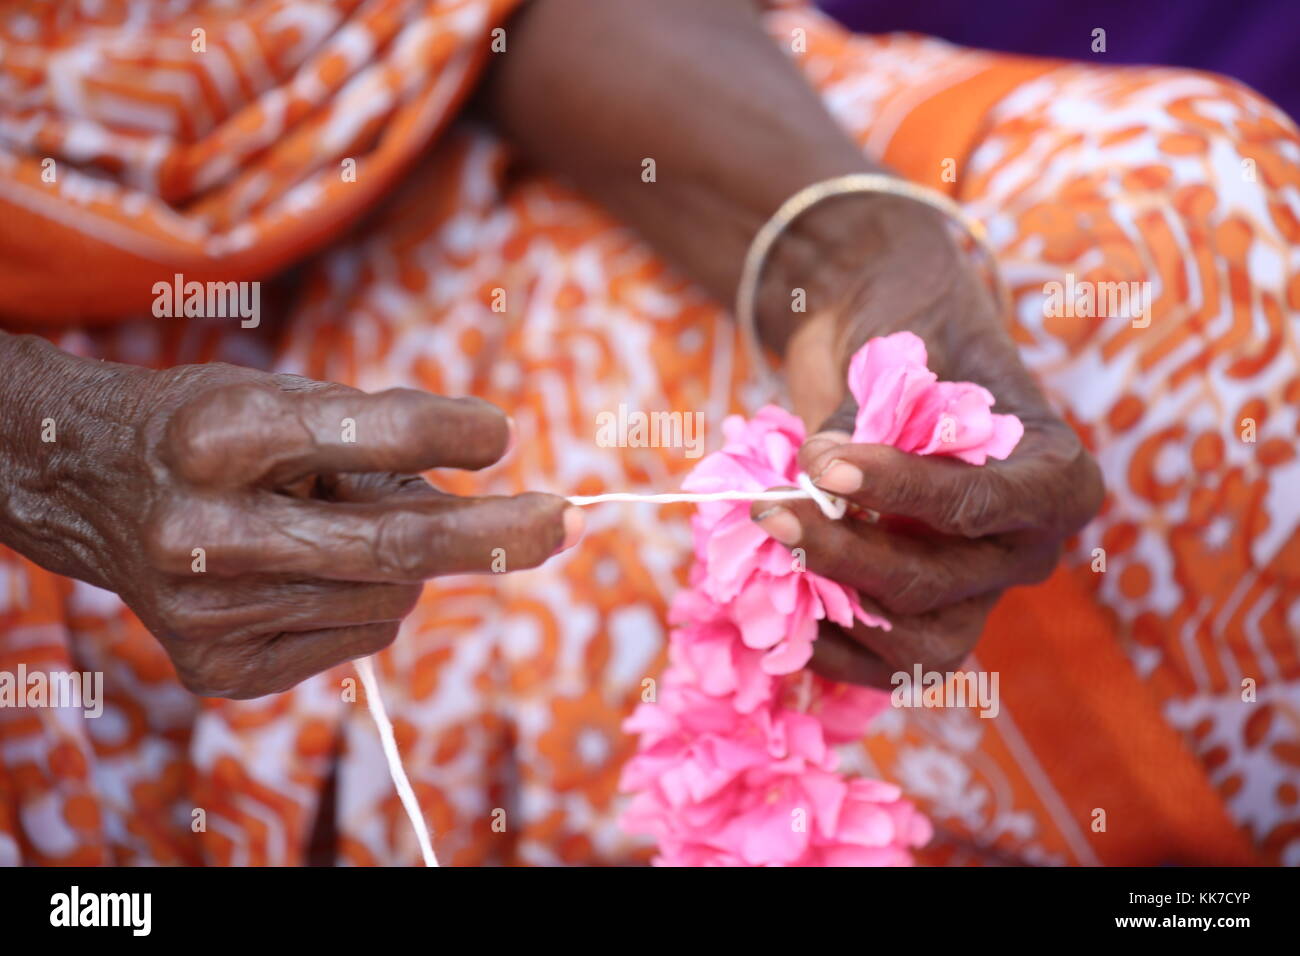 indische Frau flechten mit Schnur Blumen zu einer Girlande für den Tempel - Indian woman braid with string flowers to a garland for the temple Stock Photo